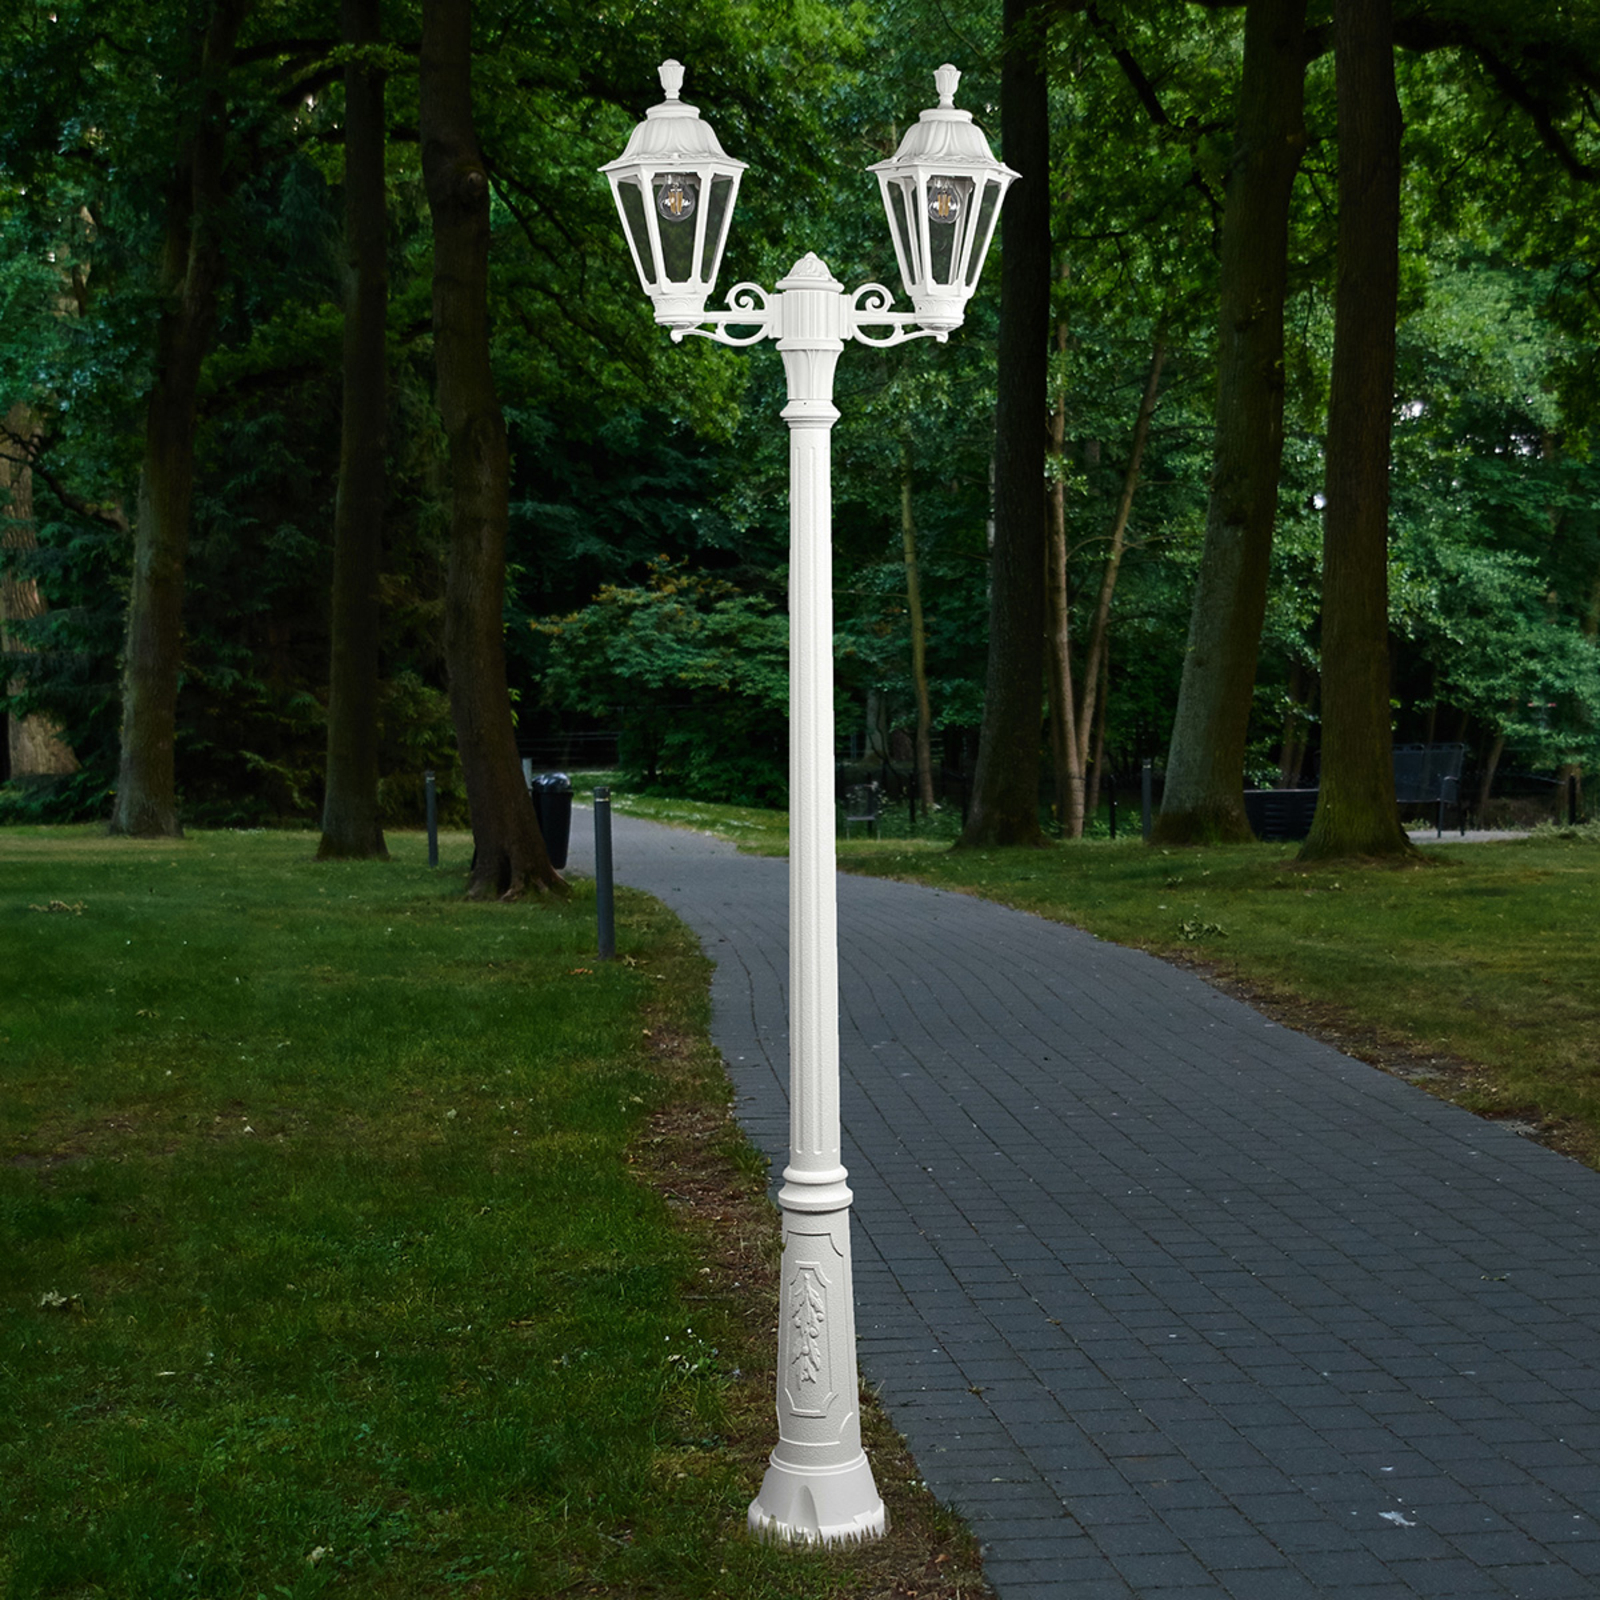 Pellen Manoeuvreren burgemeester LED lantaarnpaal Artu Rut, 2-lamps, E27, wit | Lampen24.nl